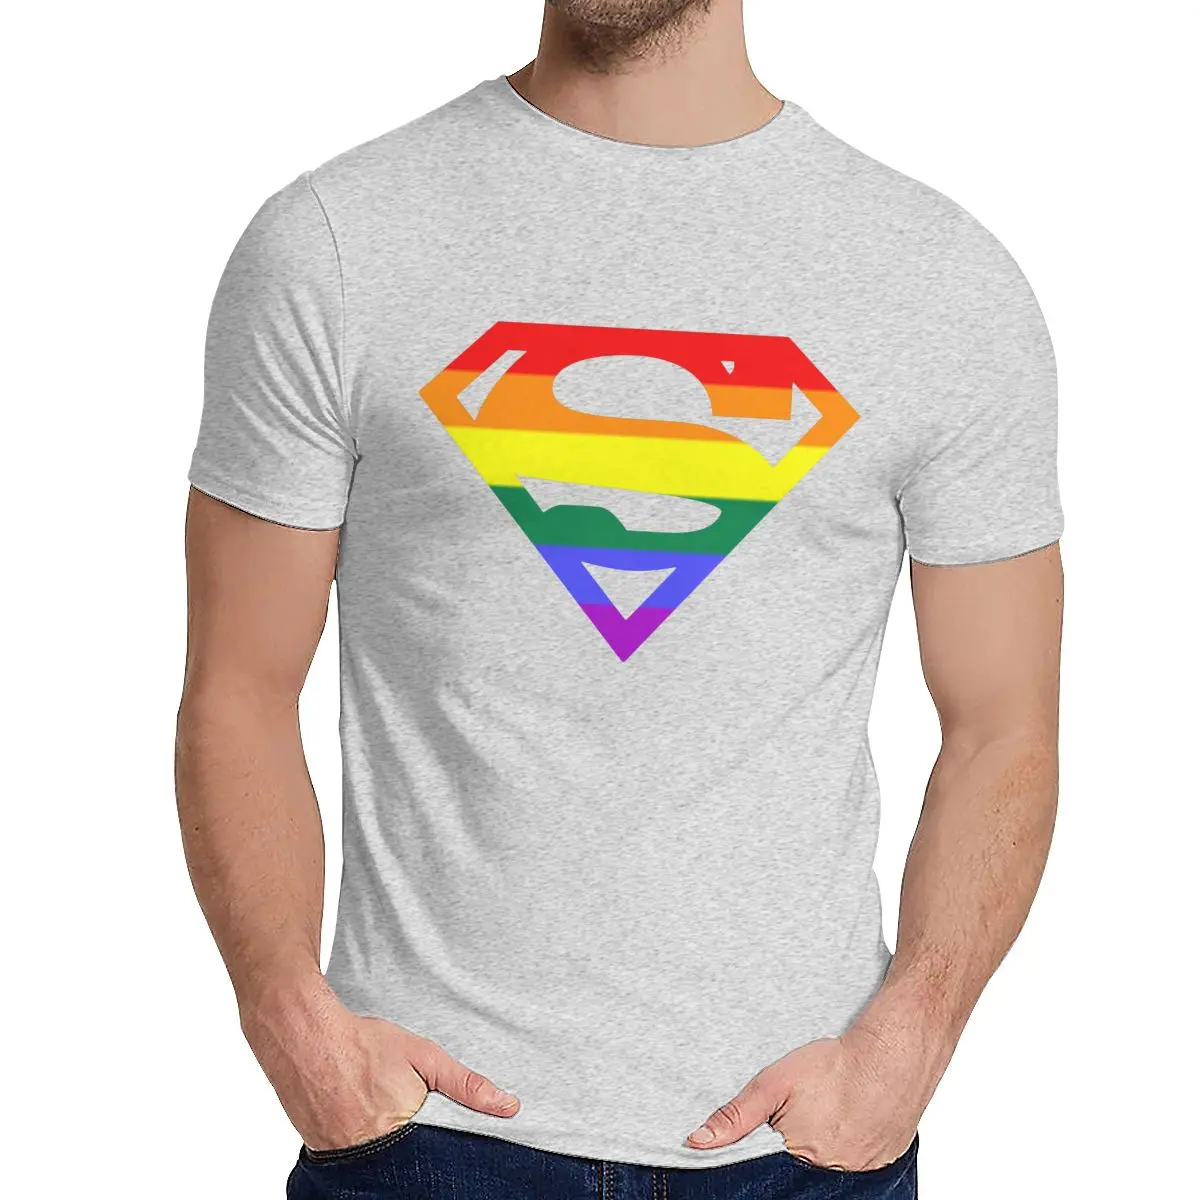 Мужская футболка супер квир Радуга, гей, LGBTQ LGBT хороший хлопок уникальный дизайн Crewneck ретро короткий рукав - Цвет: Серый